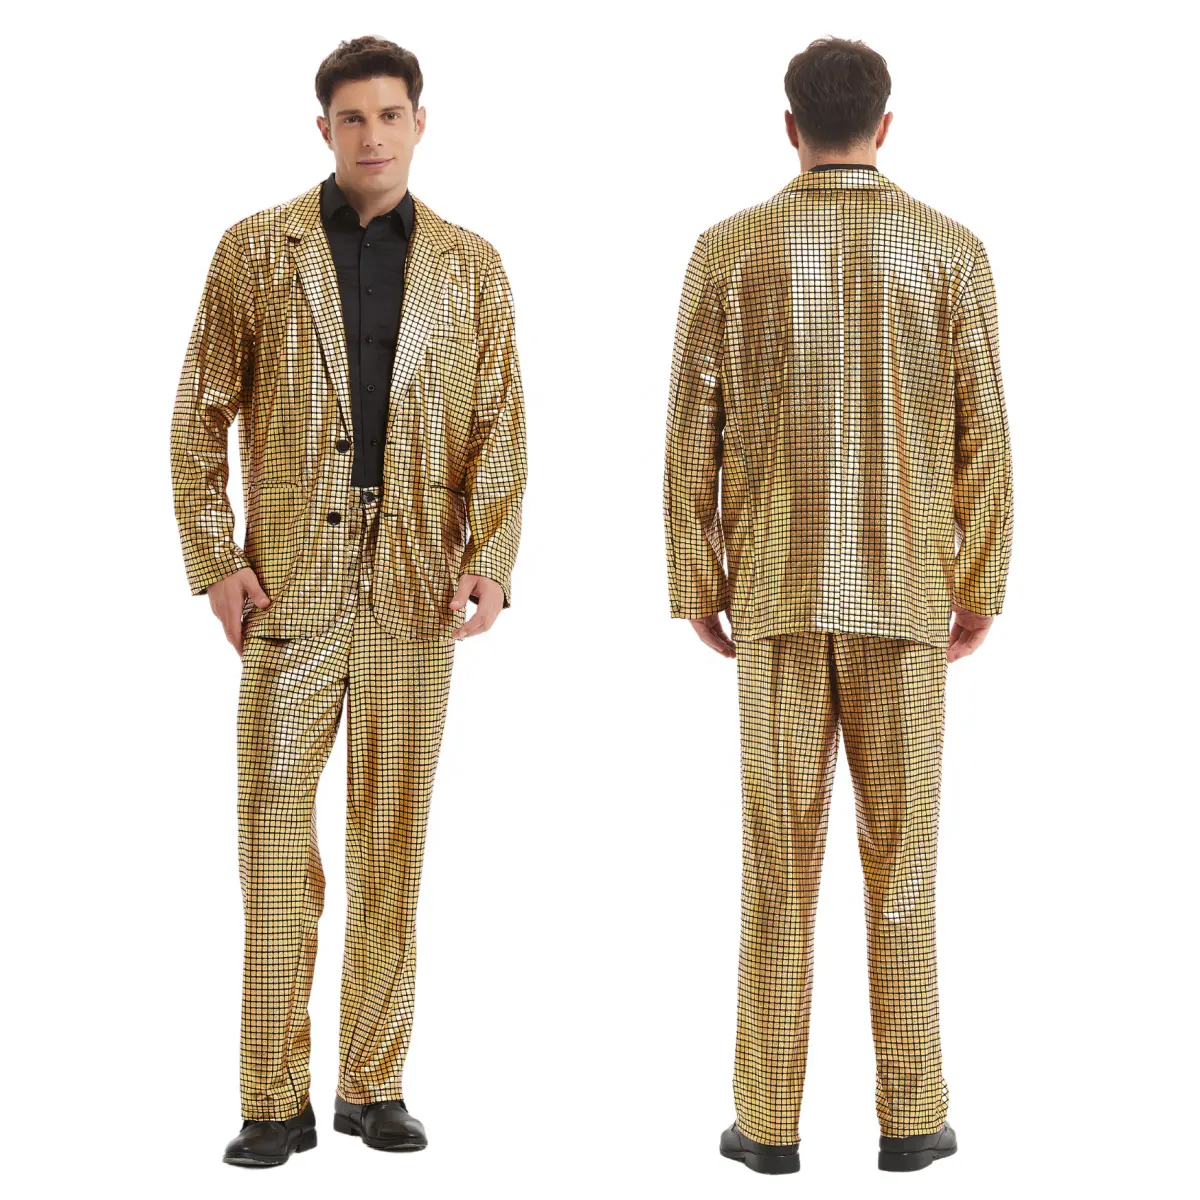 Costume à paillettes laser dorées pour hommes, veste habillée pour fête d'Halloween et anniversaire, pantalon, costume de bal de promo disco inspiré de la télévision et des films